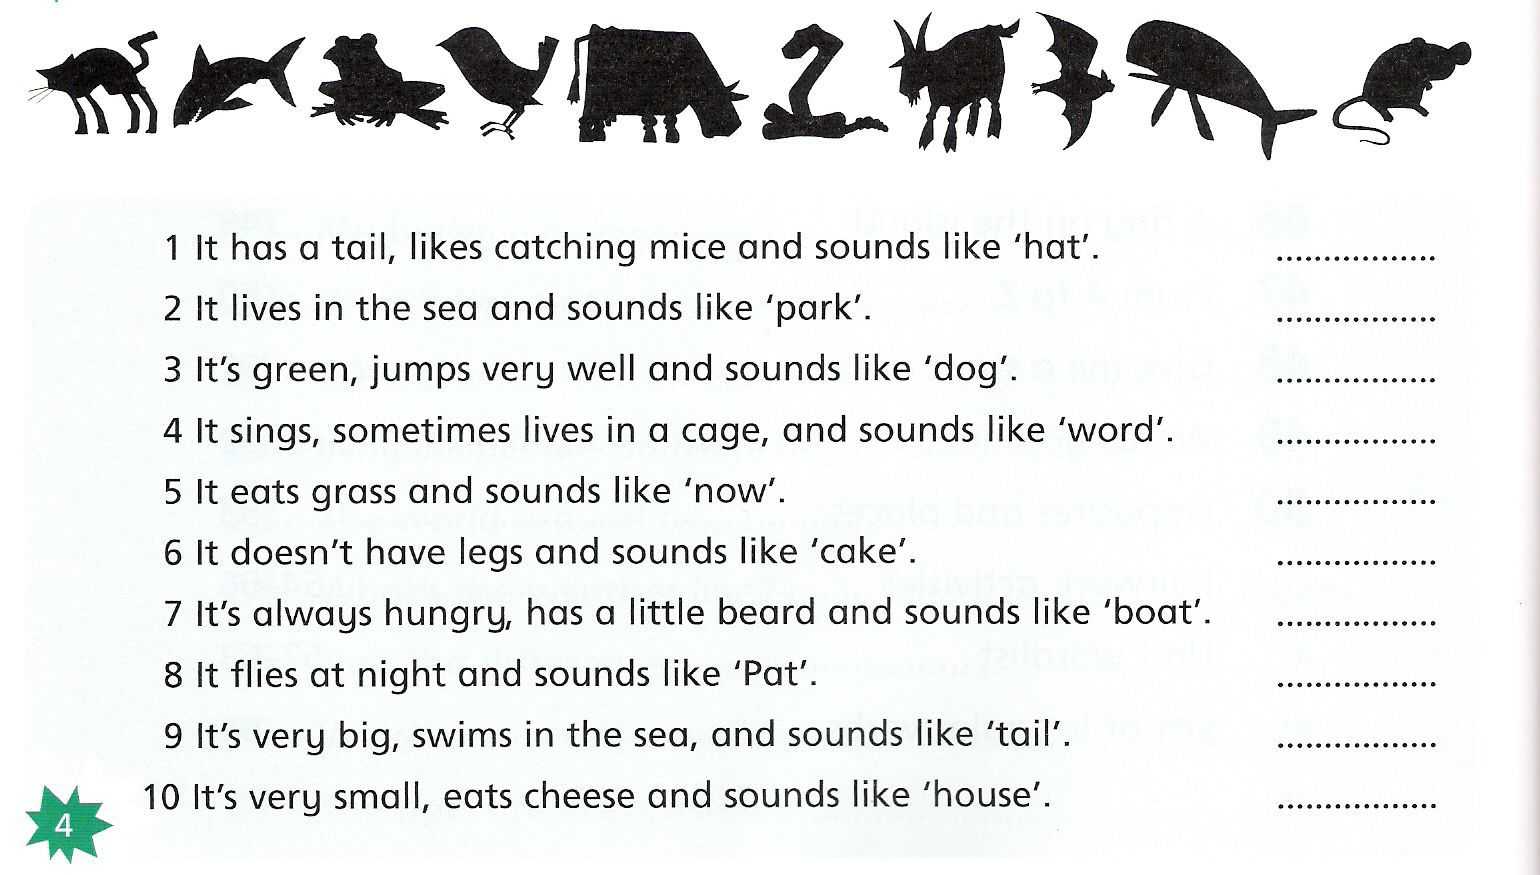 Загадки на английском языке с переводом для детей и взрослых